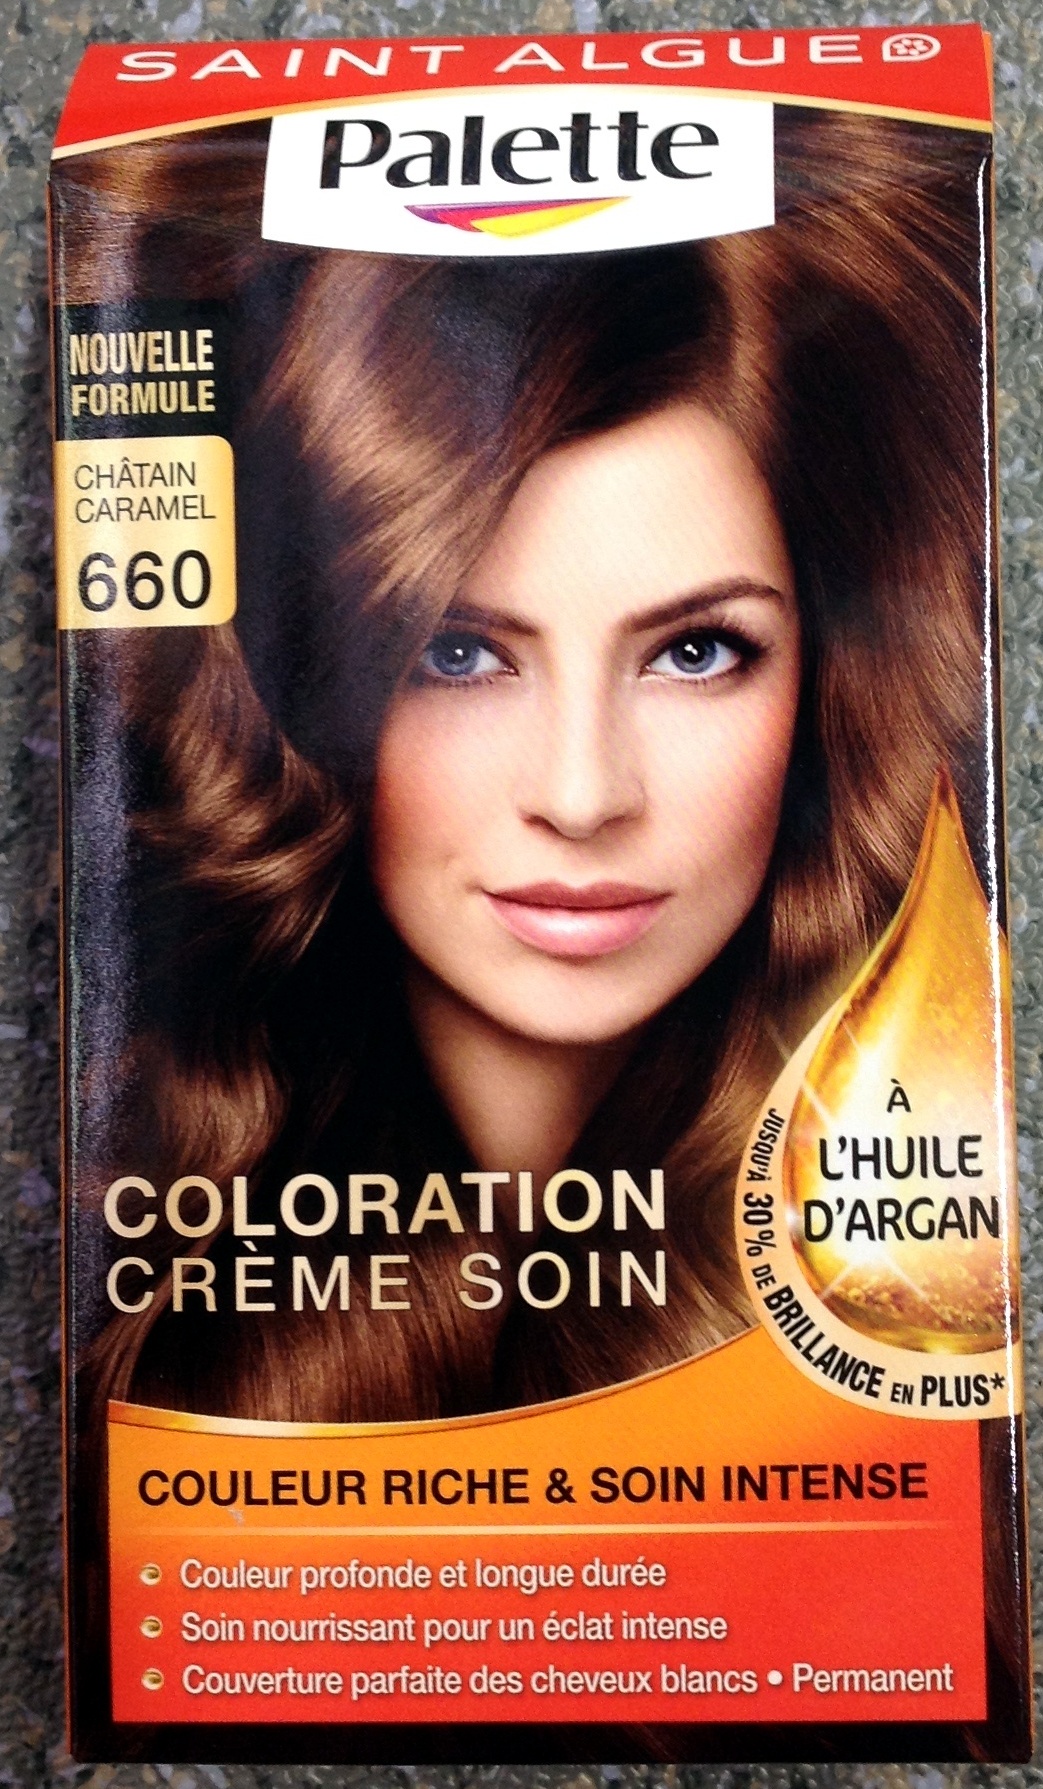 Coloration crème soin à l'huile d'argan Châtain caramel 660 - Product - fr